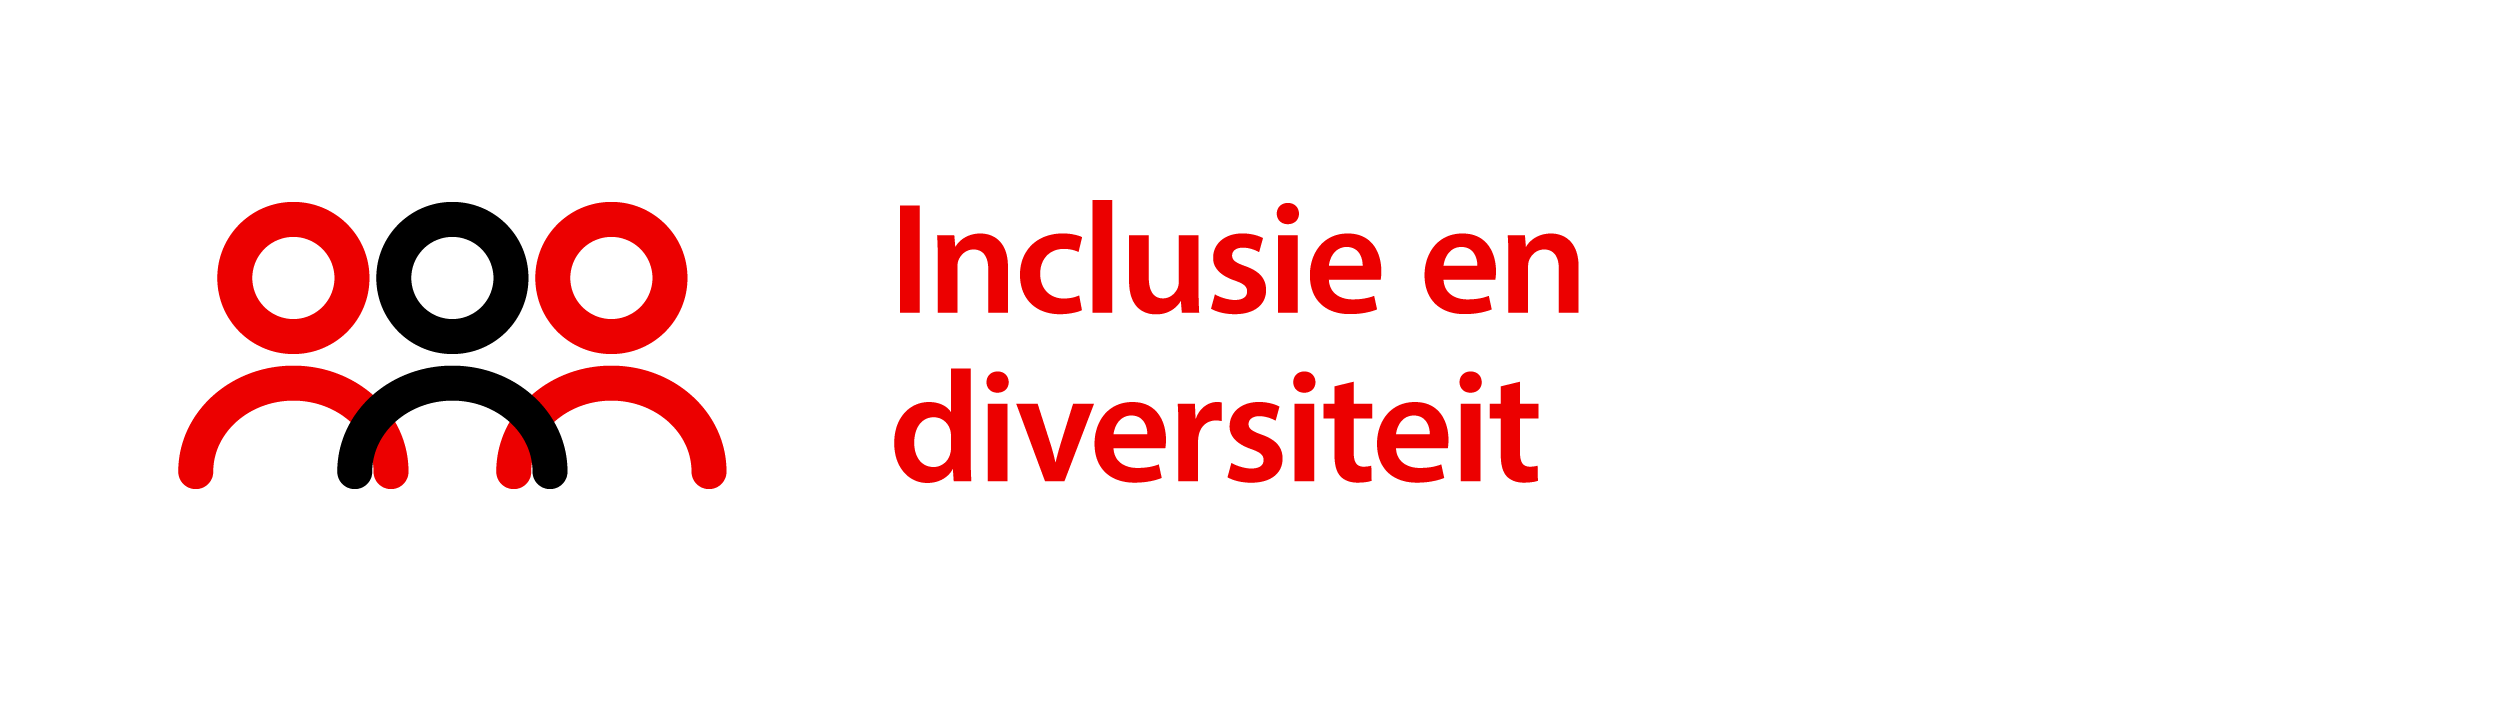 DNUS thema Inclusie en diversiteit